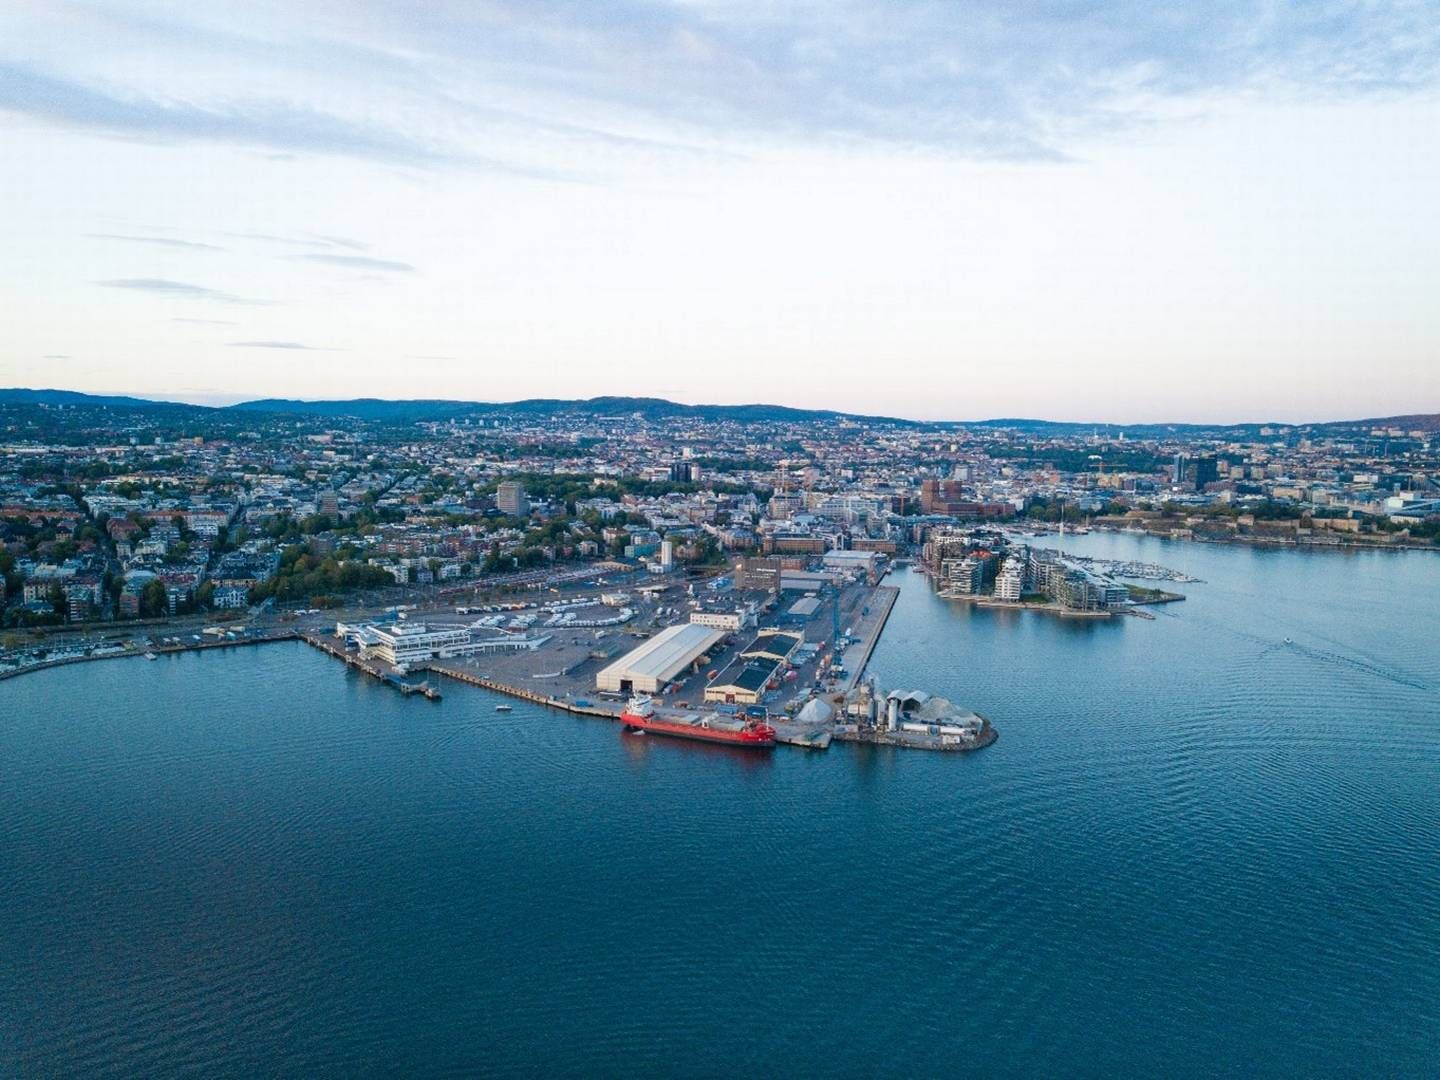 Det 320.000 kvm store havneområde Filipstad i Oslo skal med nordisk samarbejde forvandles til en ny og grøn bydel med bla. parker, byrum og strandpark: ”I Filipstad ønsker vi at sætte naturen først ved at skabe en omfattende blågrøn struktur," udtaler partner i landsskabsarkitektfirmaet SLA, som skal være med til at omdanne havnen.